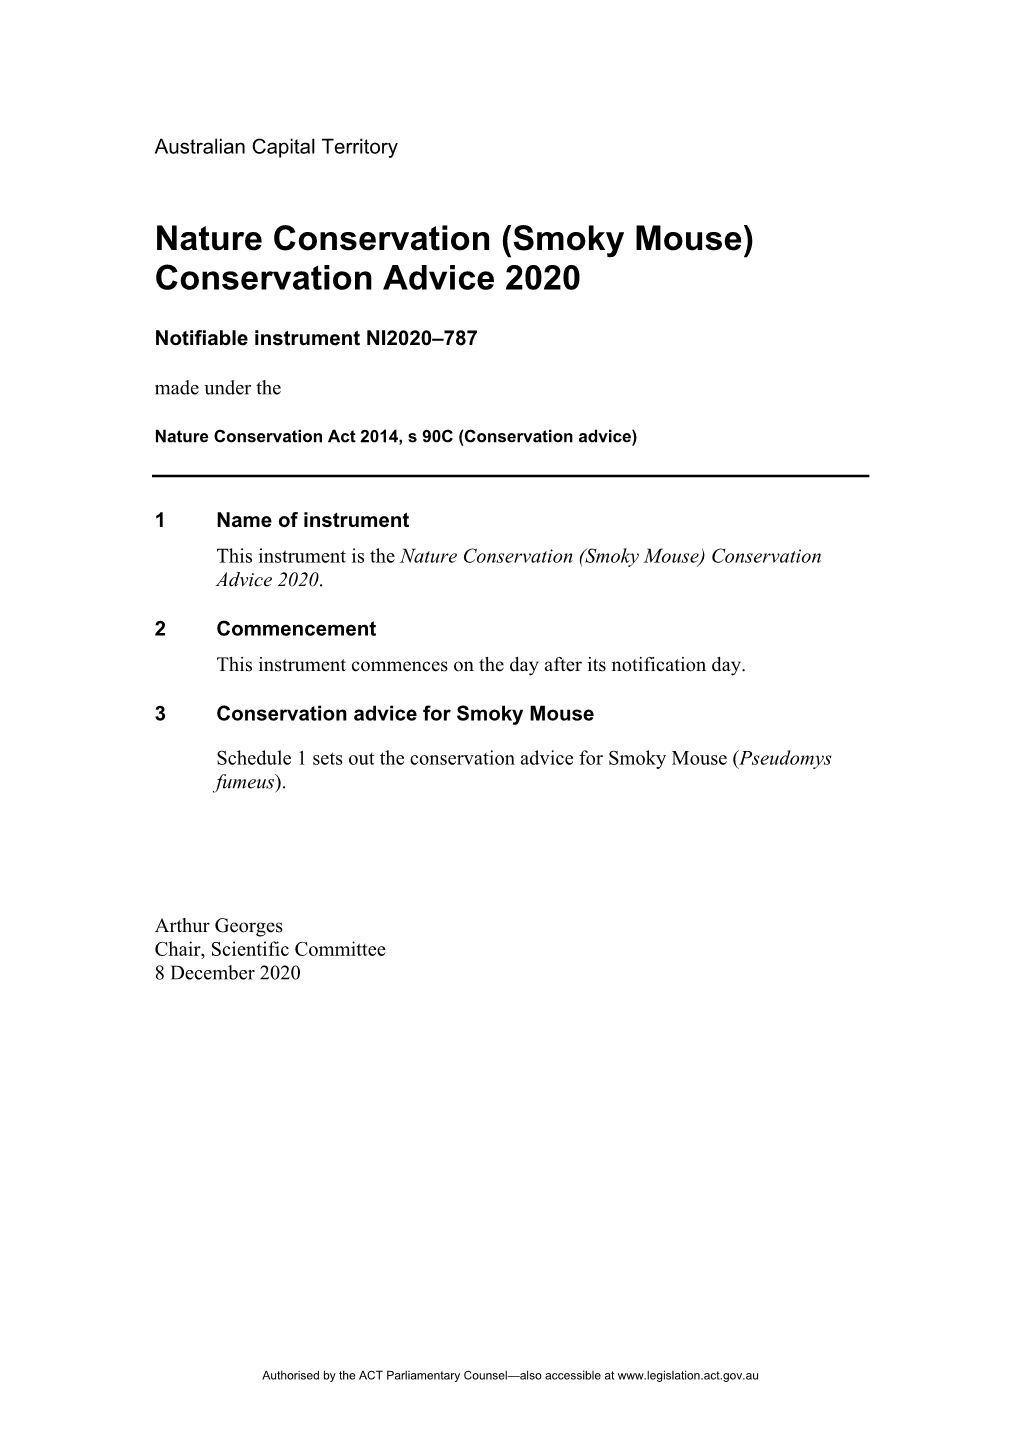 (Smoky Mouse) Conservation Advice 2020